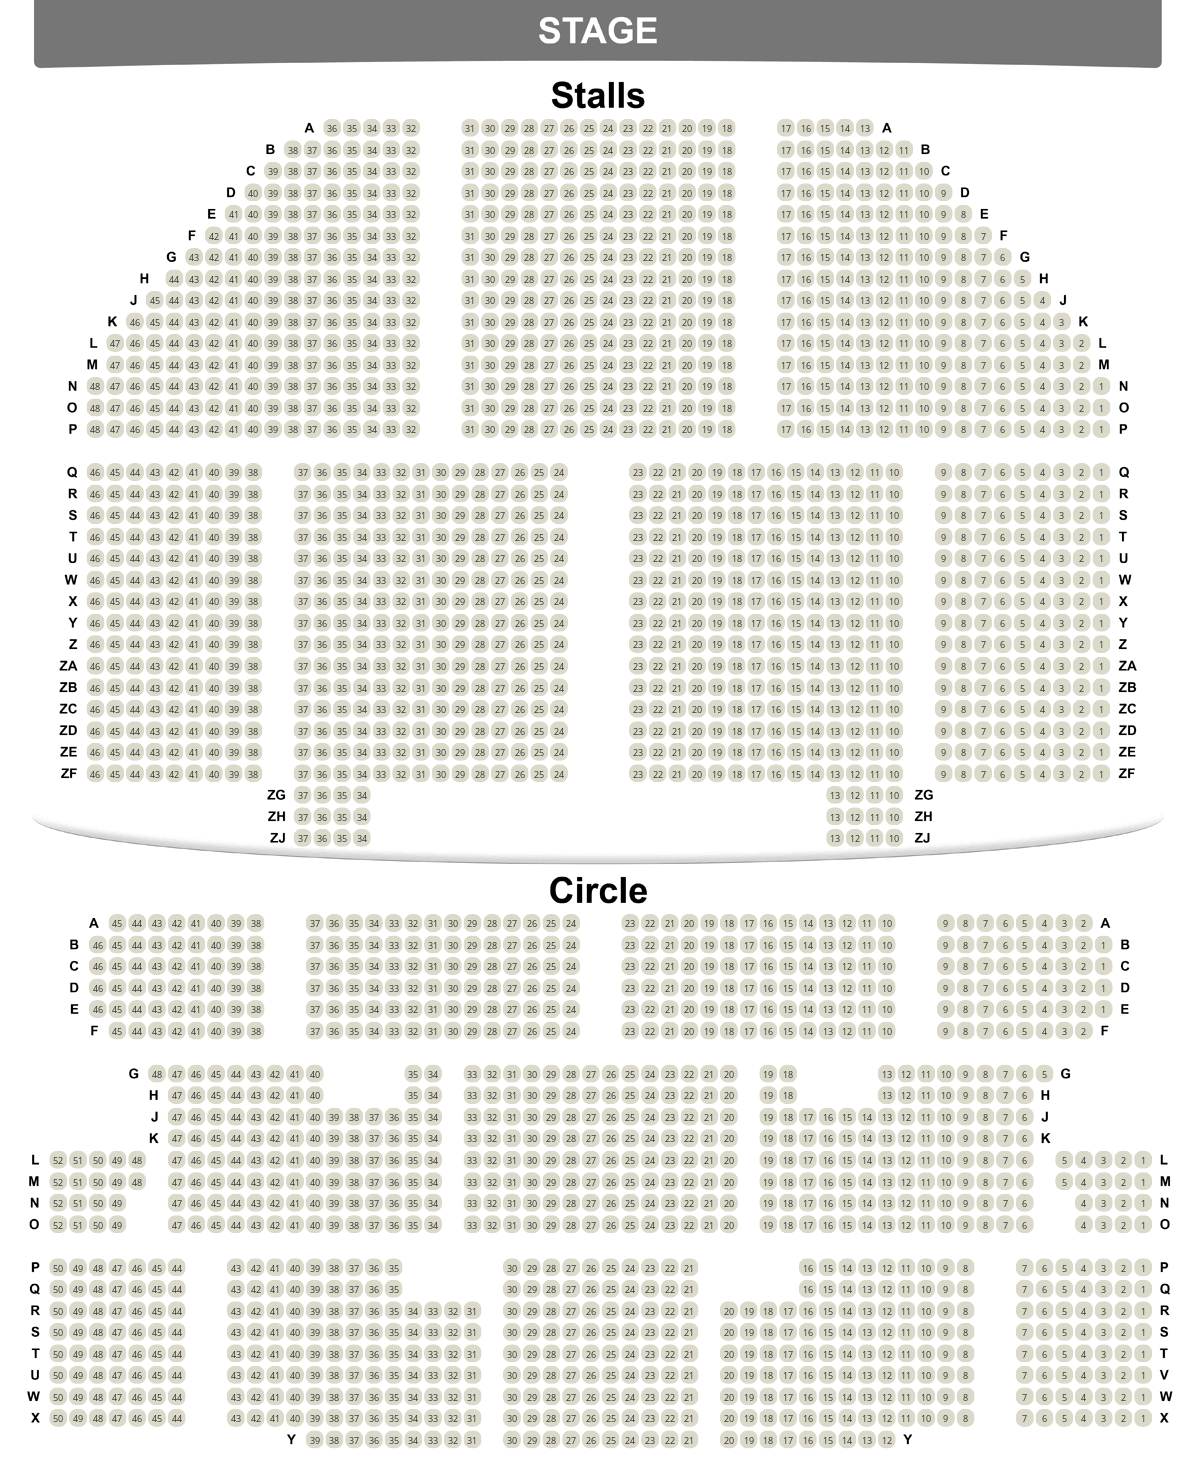 Apollo Victoria seating plan